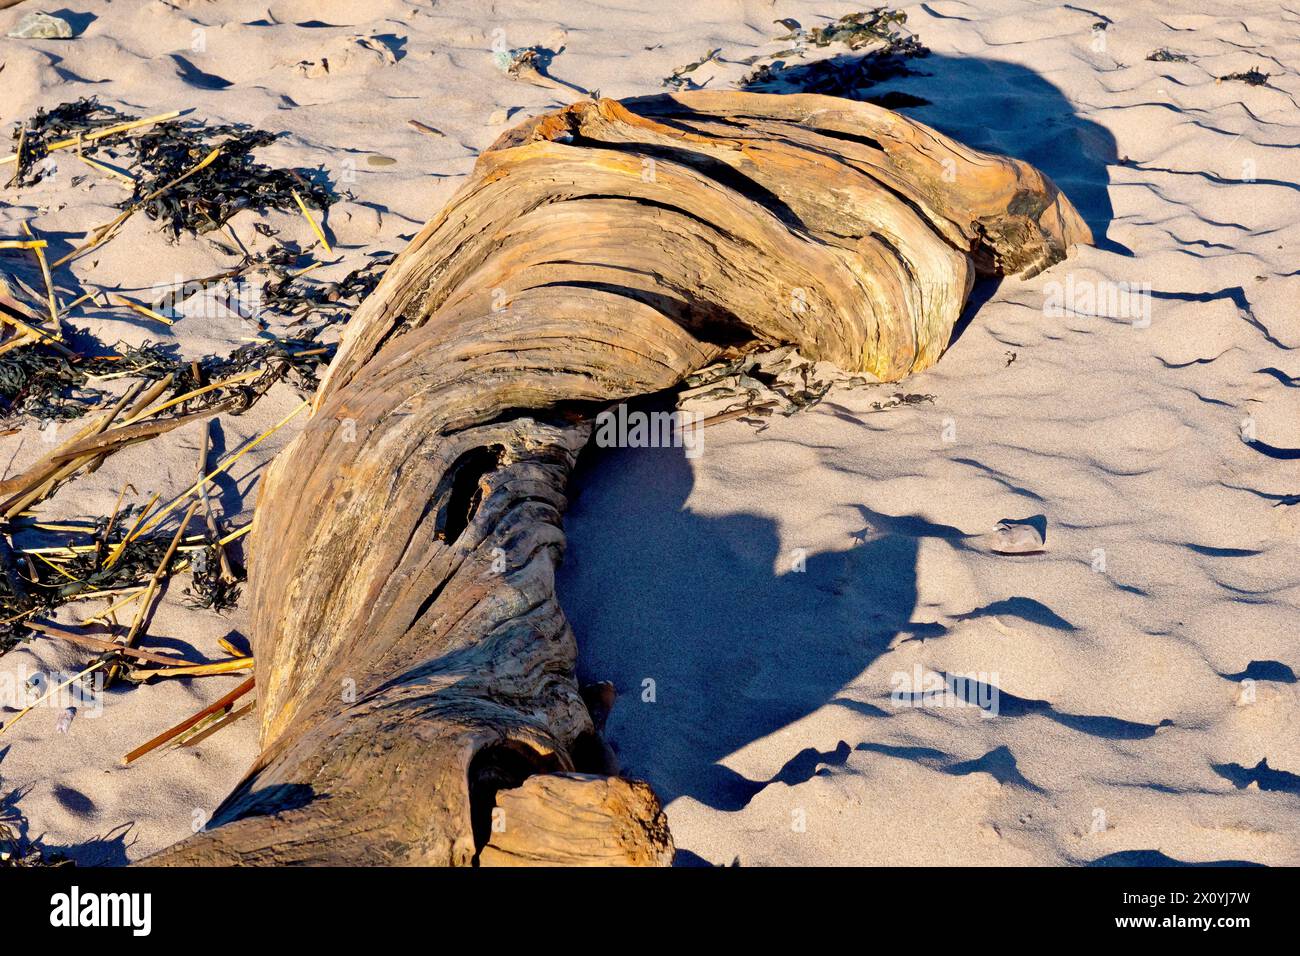 Nahaufnahme eines großen, verdrehten, verrotteten Baumstamms, der als Treibholz an einem Sandstrand angespült wurde. Stockfoto